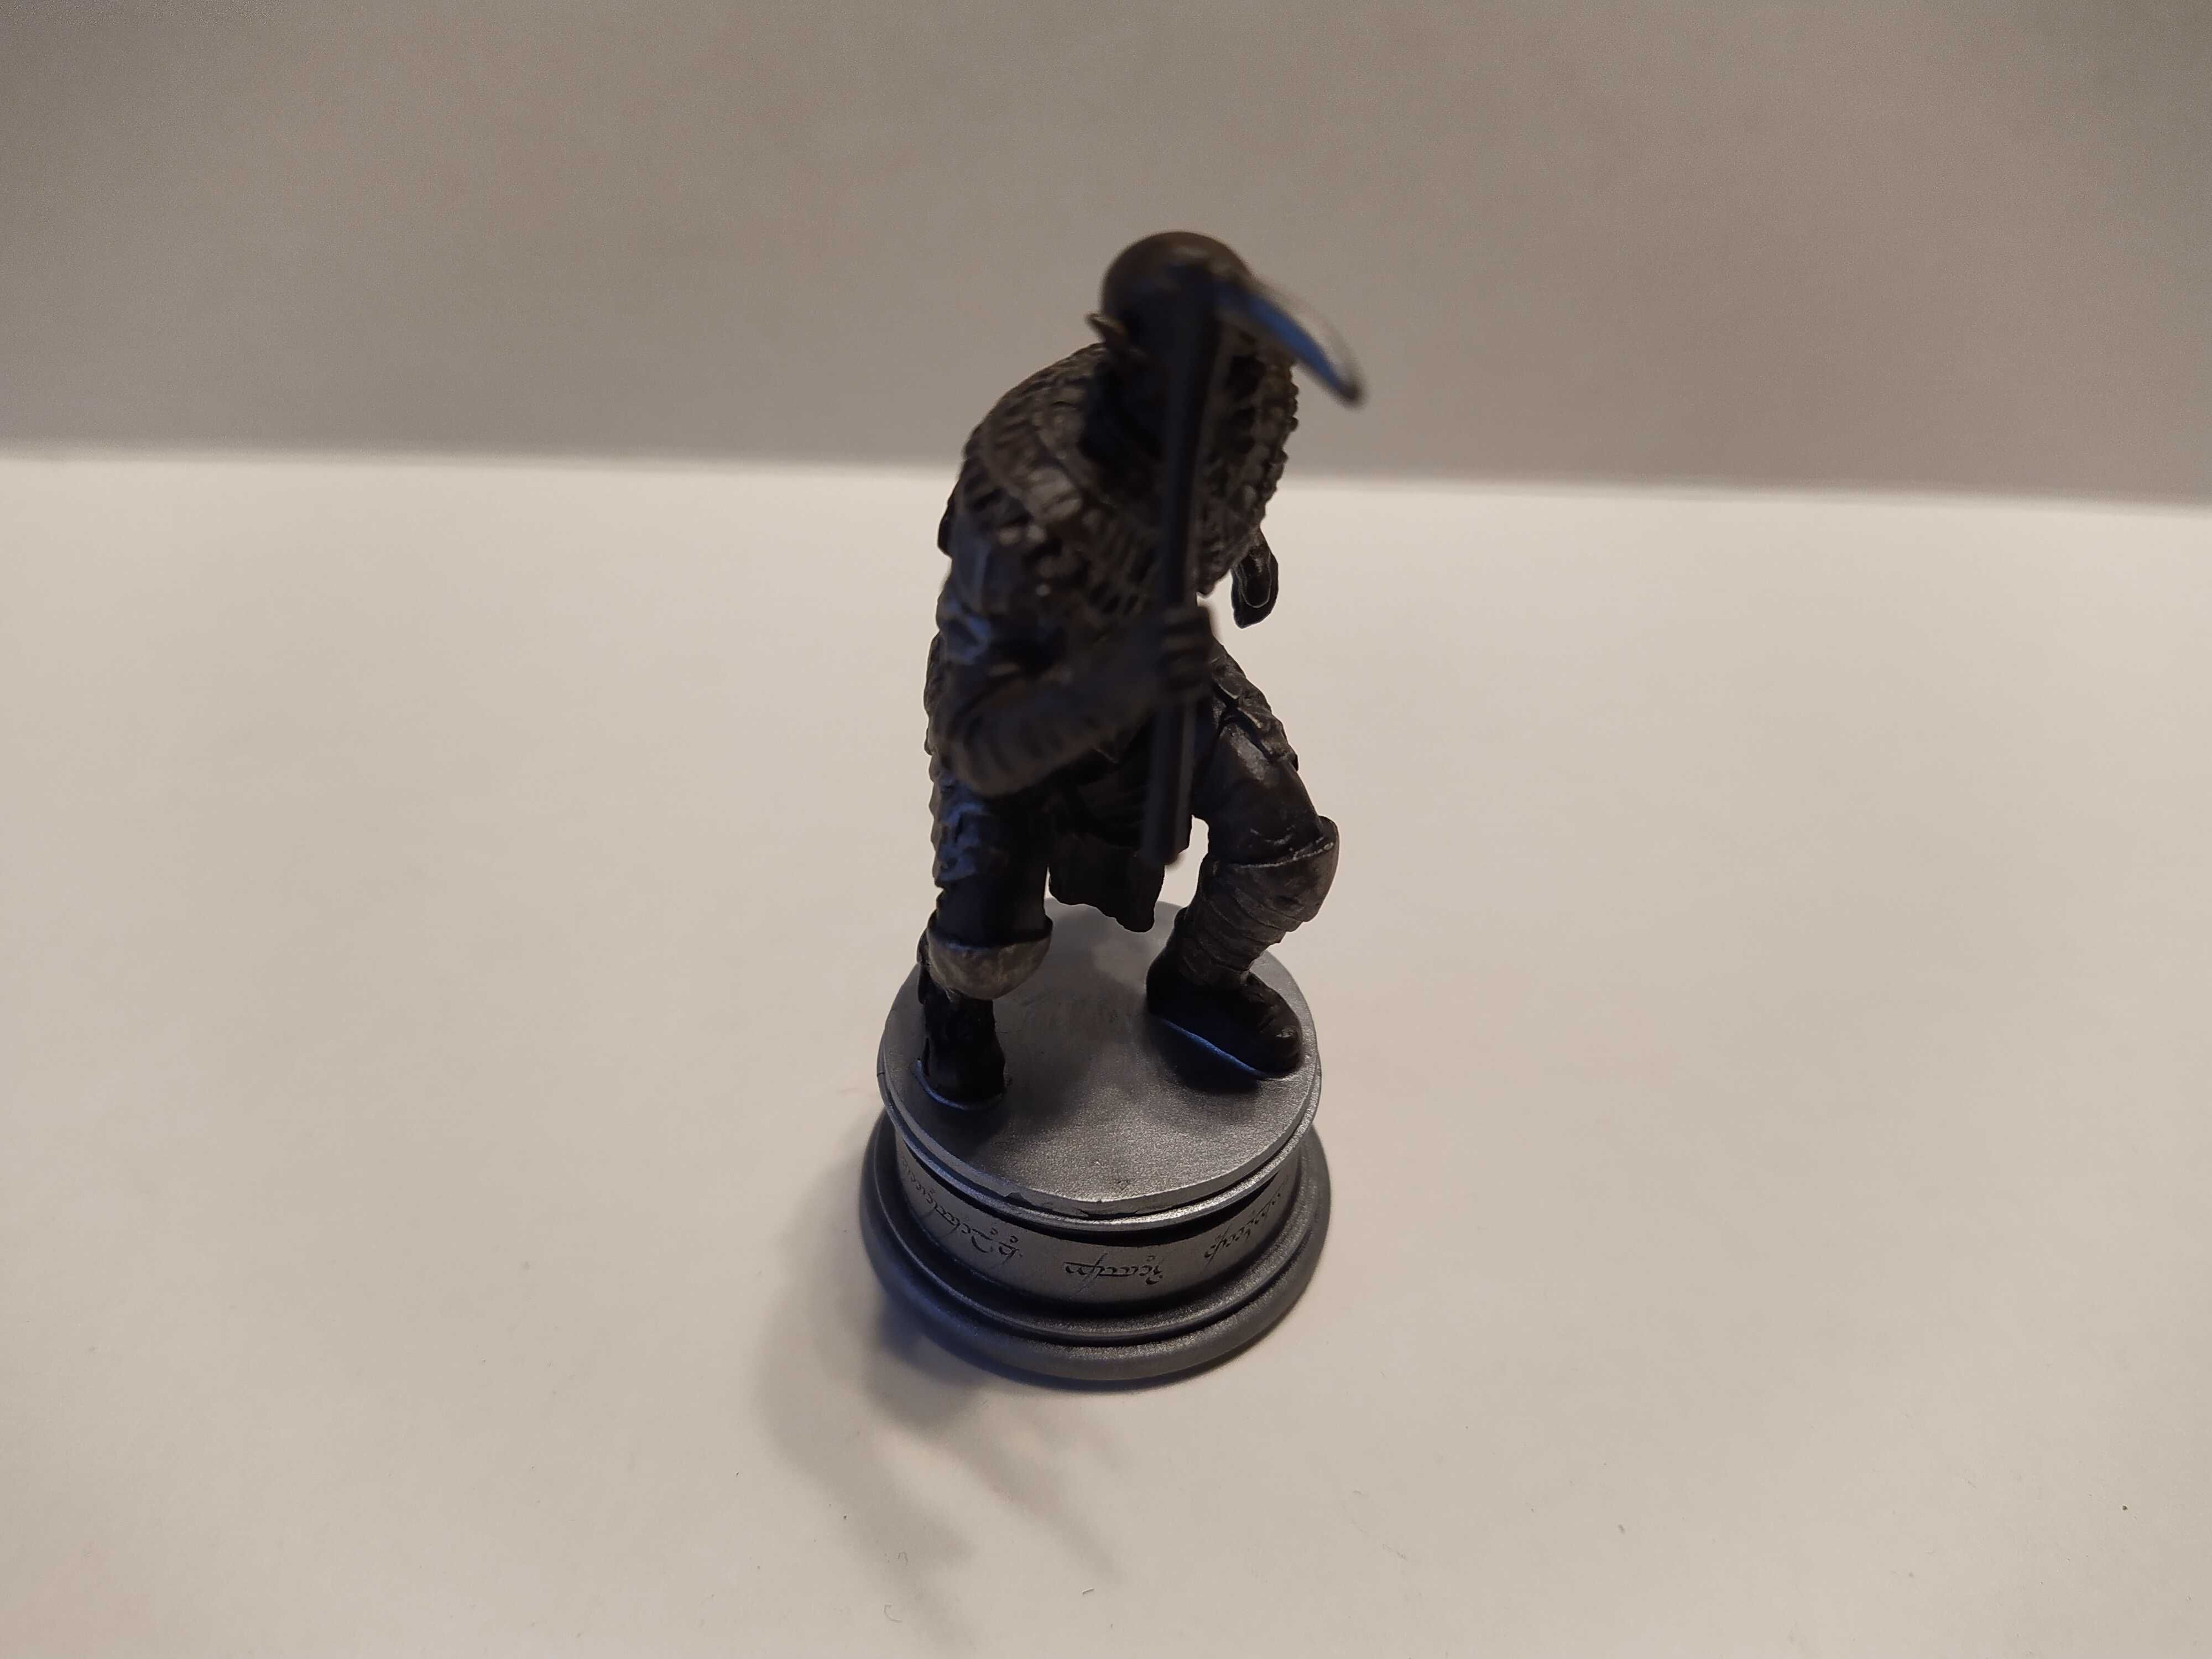 Władca pierścieni figurka Orc Soldier Eaglemoss collection